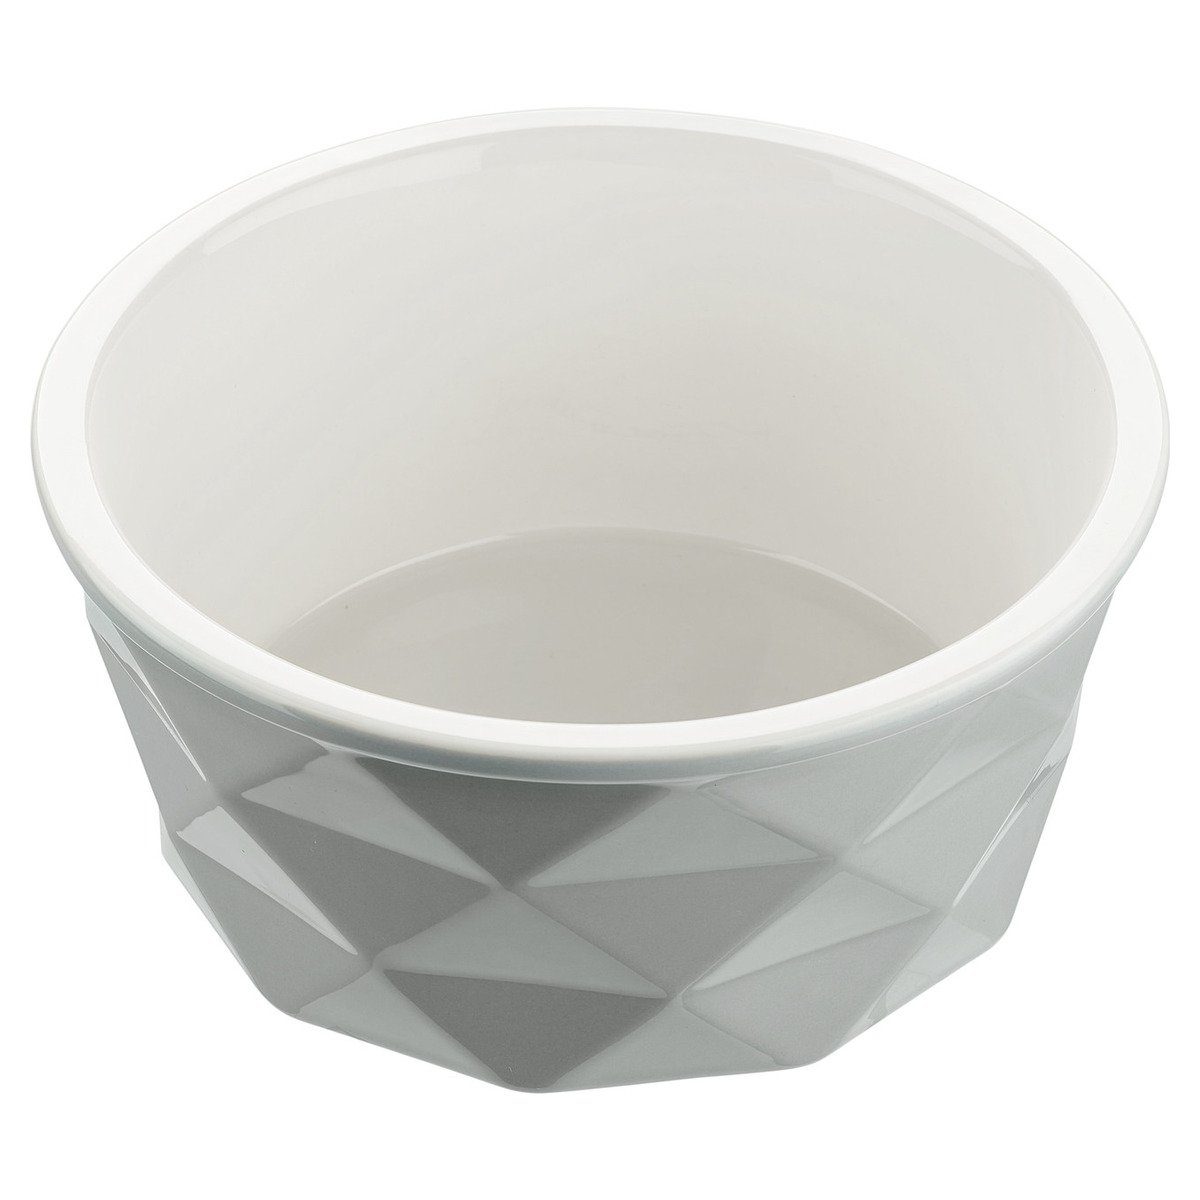 Hunter Tierbedarf Futterbehälter Keramik-Napf Eiby grau, Fassungsvermögen: 550 ml / Durchmesser: 13 cm